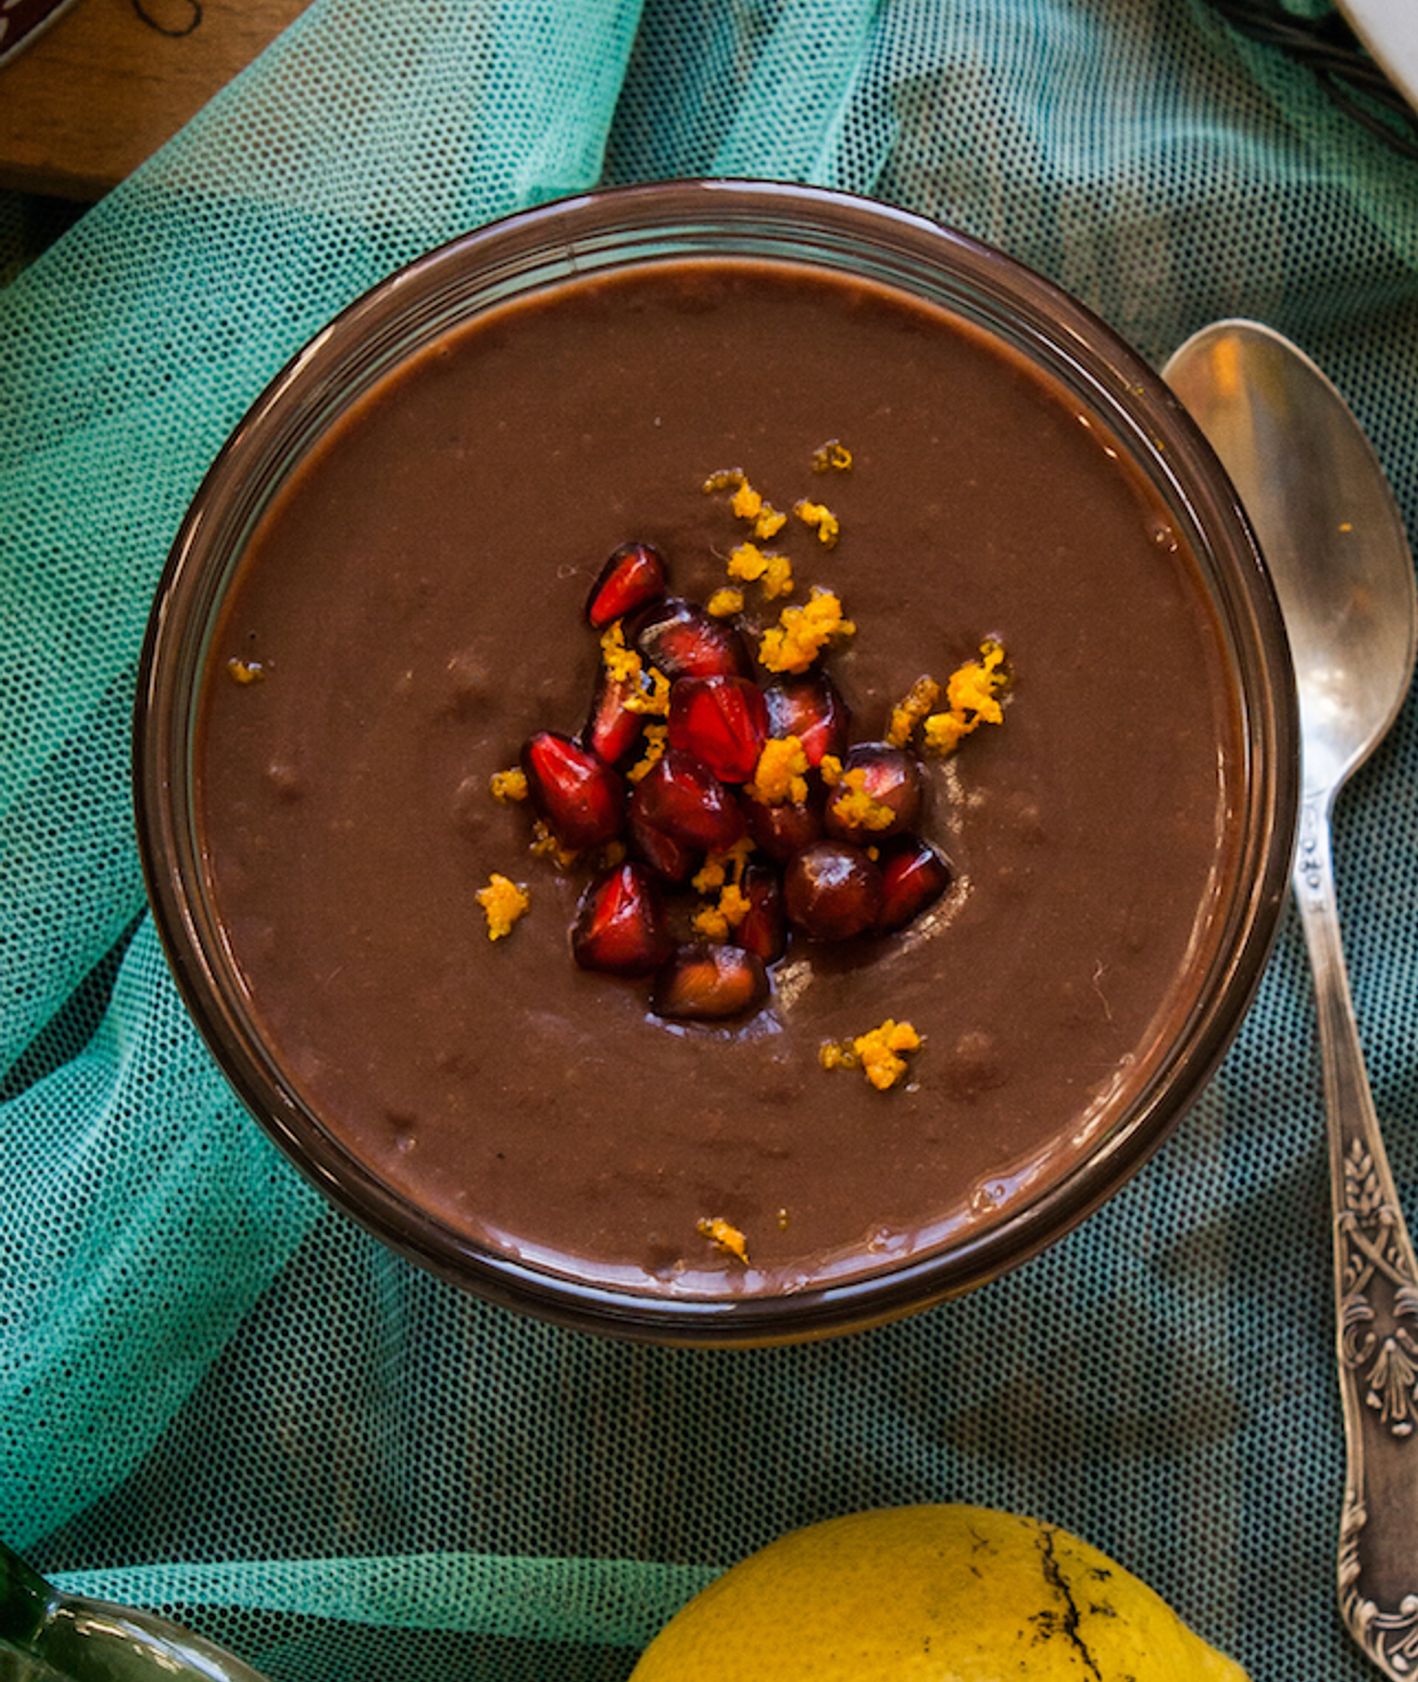 Pyszny i zdrowy wegański budyń czekoladowy. Budyń czekoladowy z fasoli z kardamonem (fot. Alicja Rokicka / Wegan Nerd)